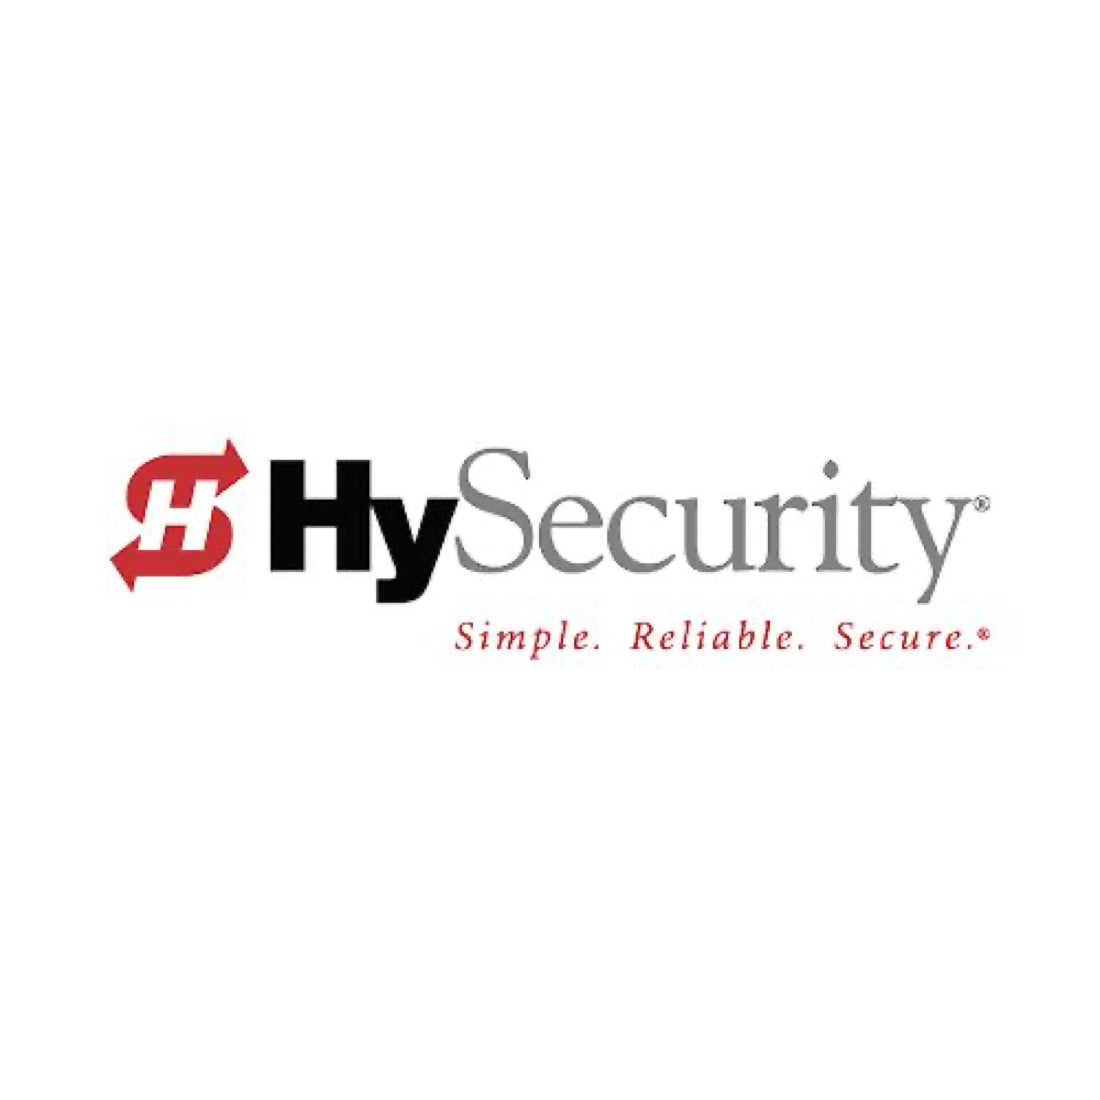 Hysecurity MX000747 Aluminum/Fiberglass Replacement Arm, 36 ft